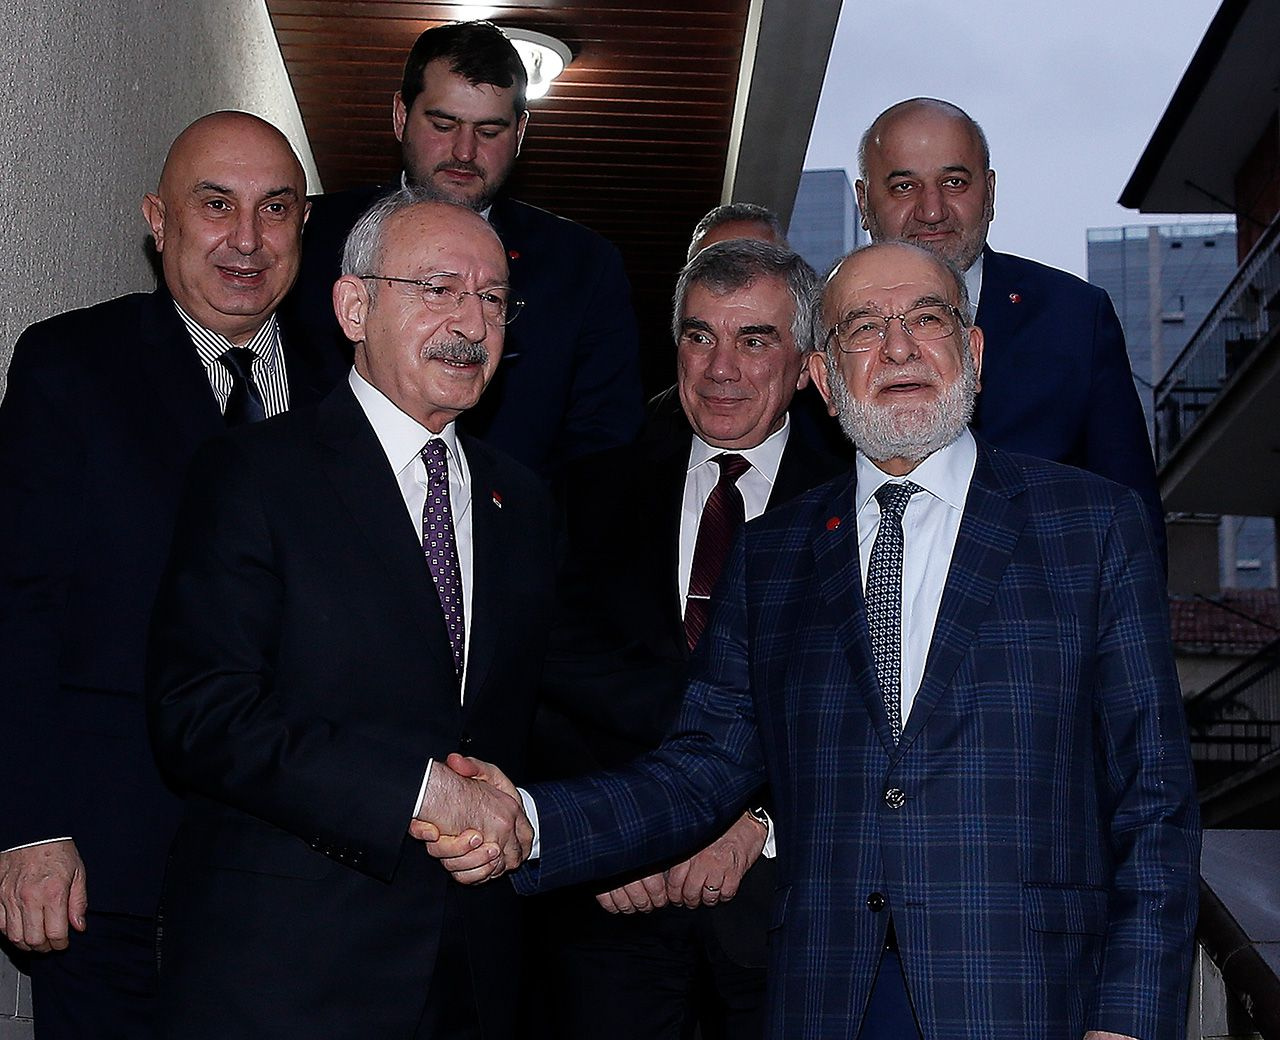 Kılıçdaroğlu ile Karamollaoğlu Libya tezkeresi konusunda görüş alışverişinde bulundu